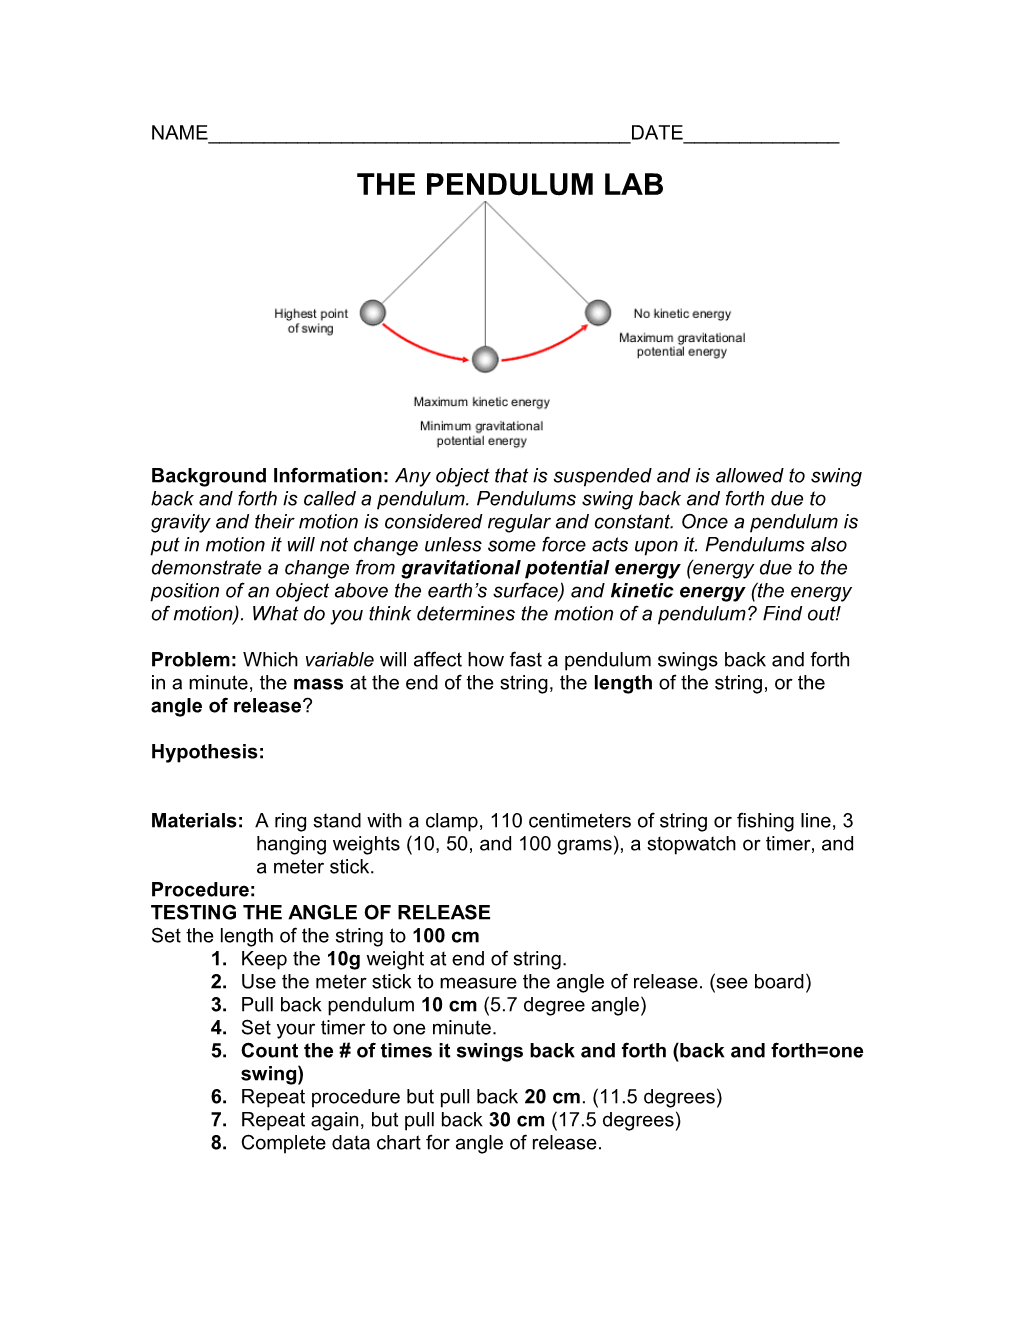 The Pendulum Lab